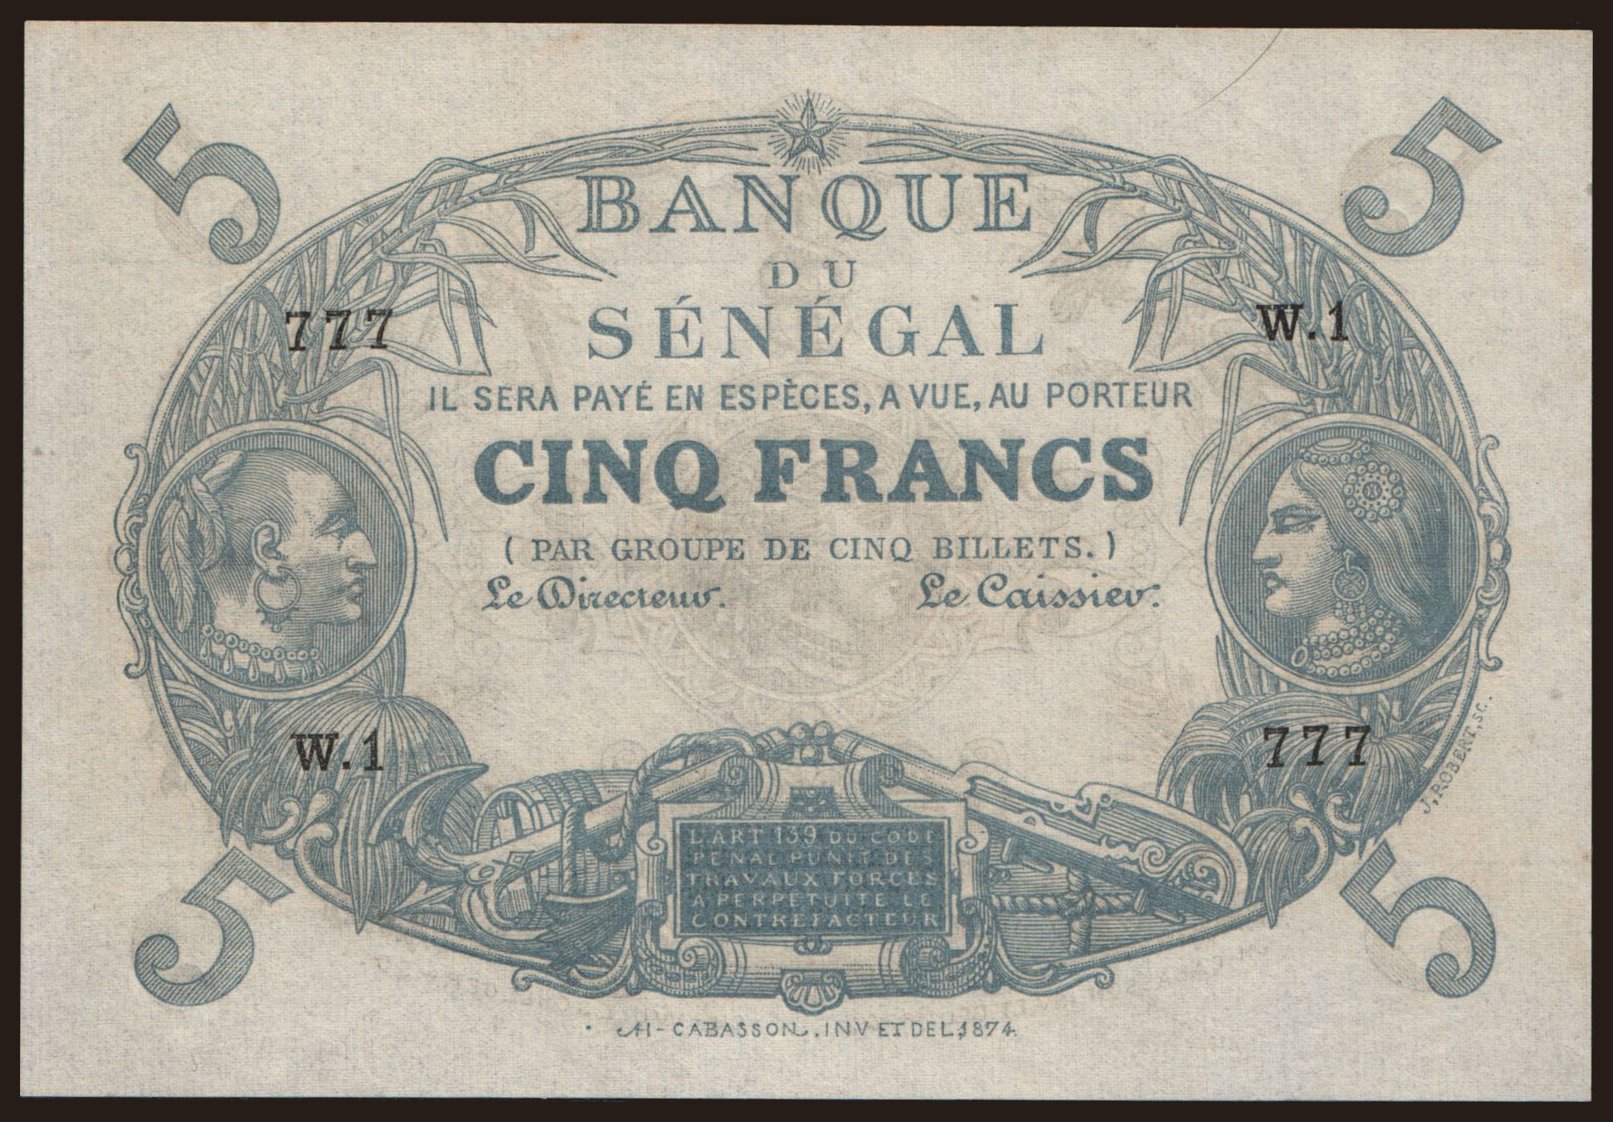 5 francs, 1874